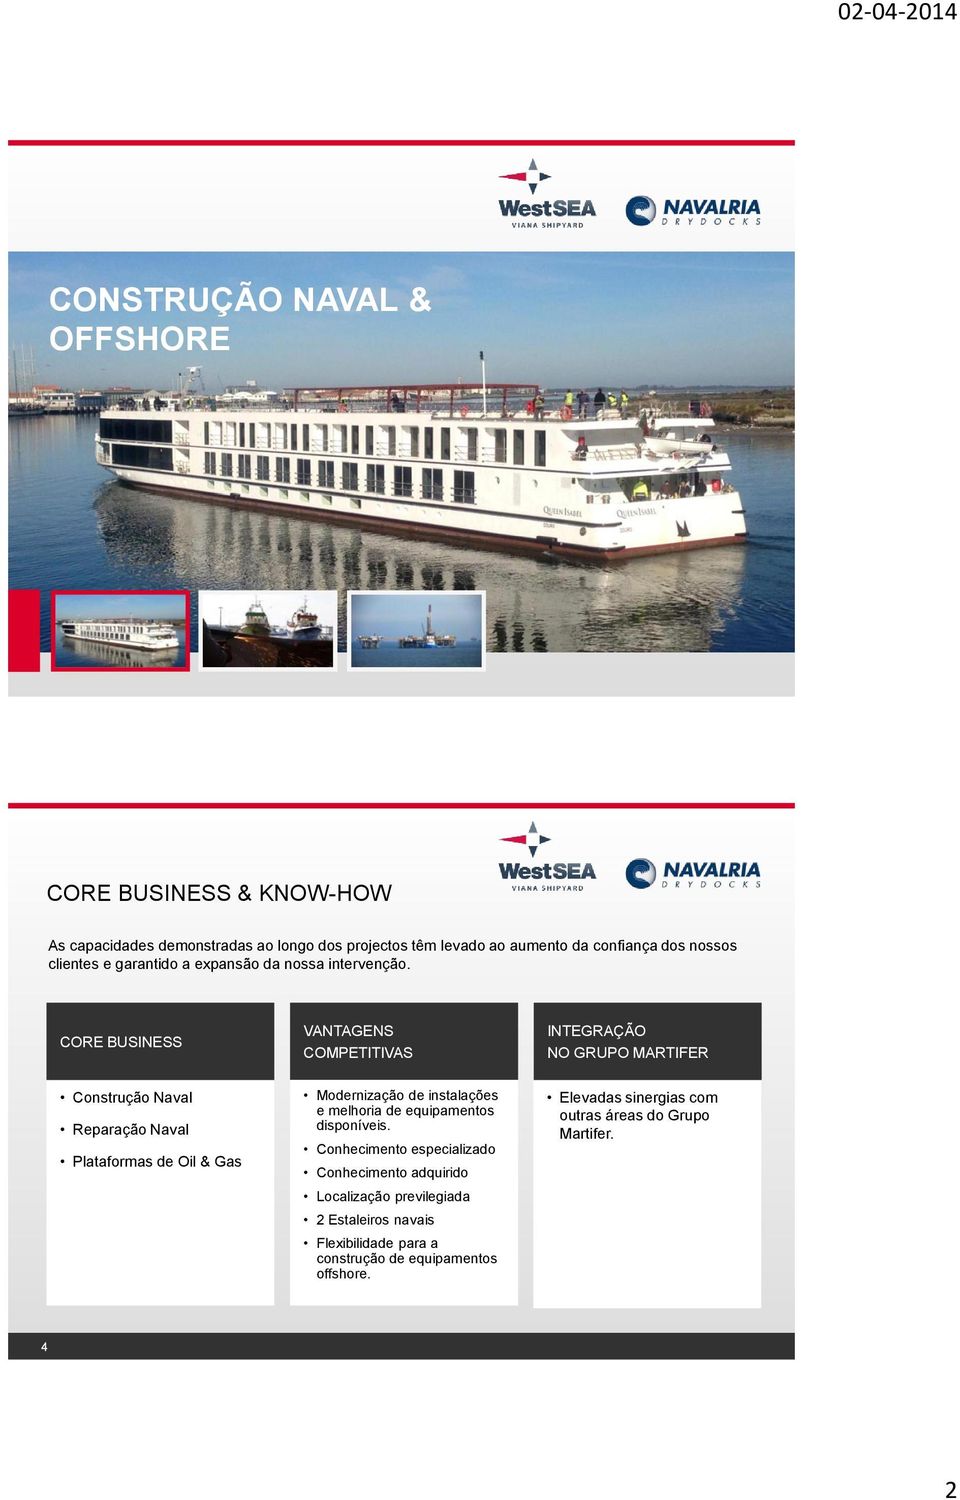 CORE BUSINESS VANTAGENS COMPETITIVAS INTEGRAÇÃO NO GRUPO MARTIFER Construção Naval Reparação Naval Plataformas de Oil & Gas Modernização de instalações